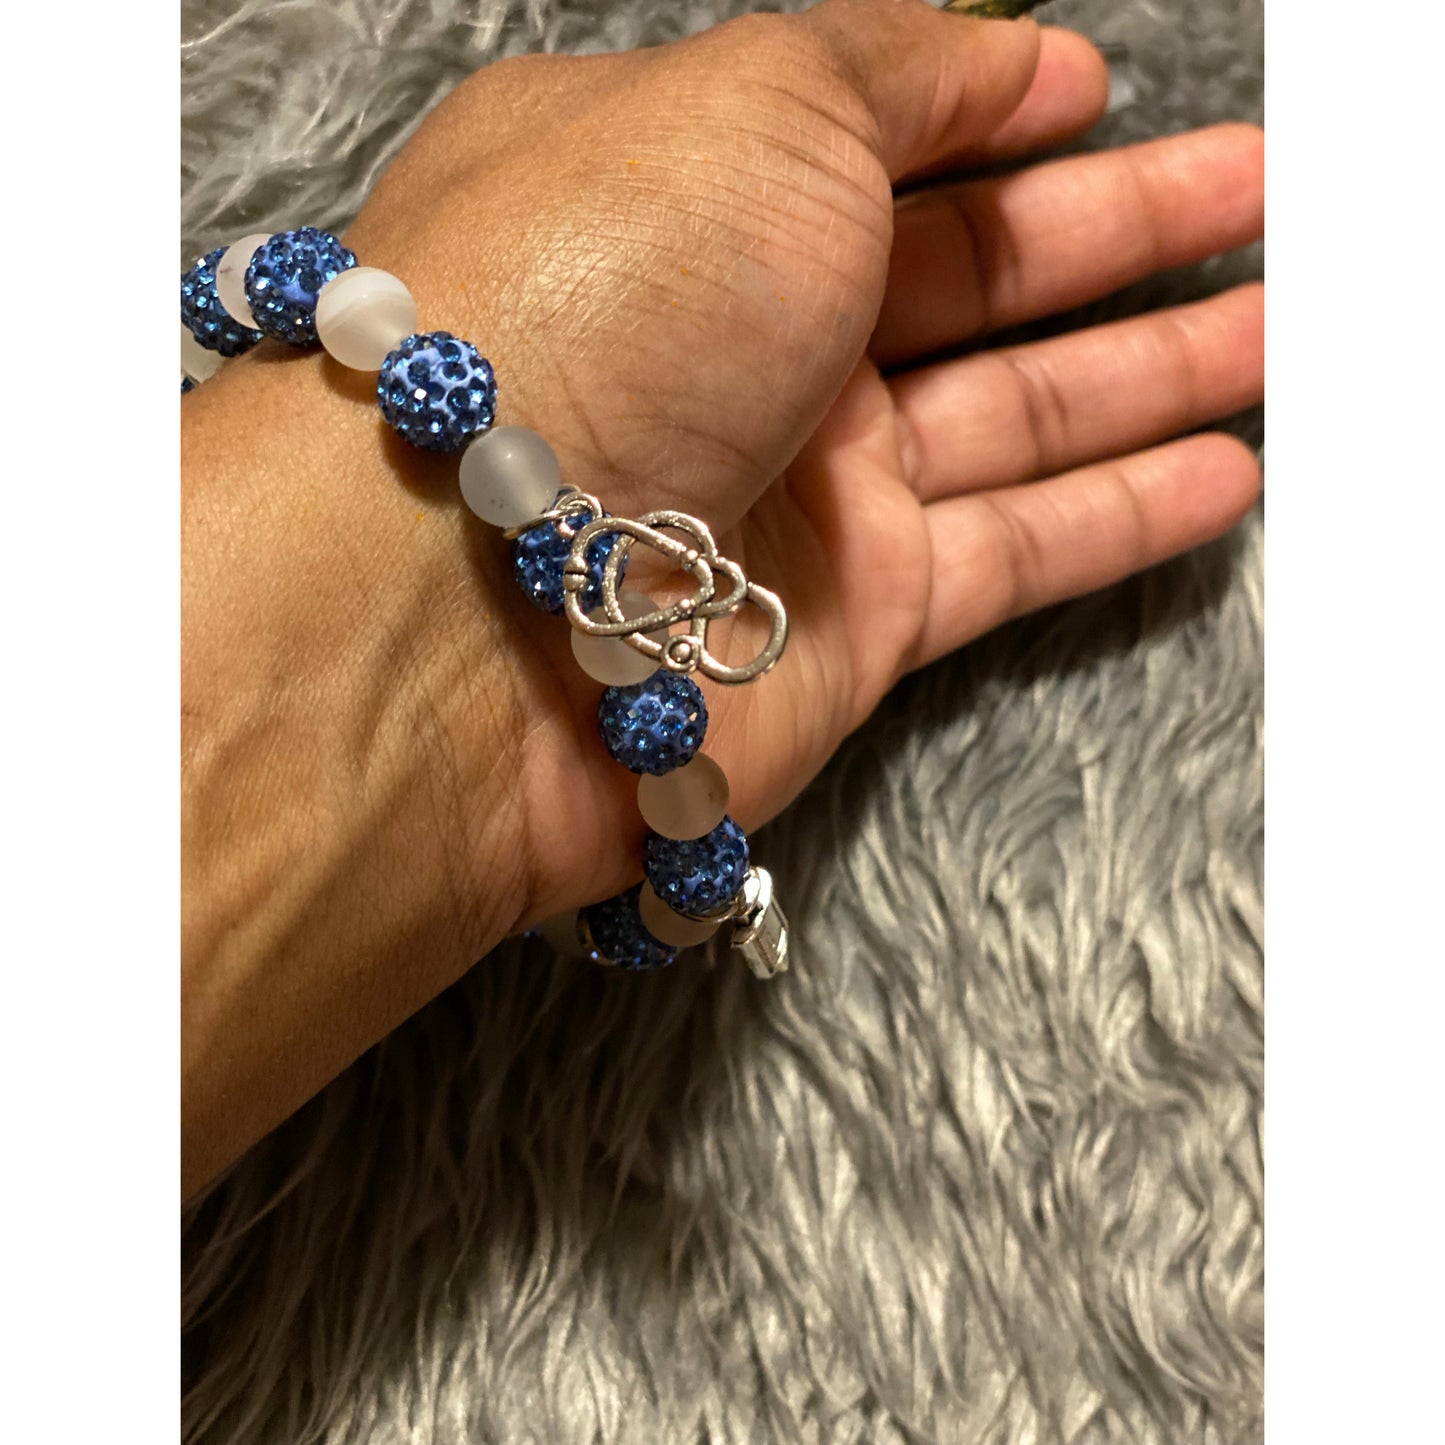 Blue Glitter & White Howlite nursing charm beaded bracelet - Eb Creations Bracelets Blue Glitter & White Howlite nursing charm beaded bracelet